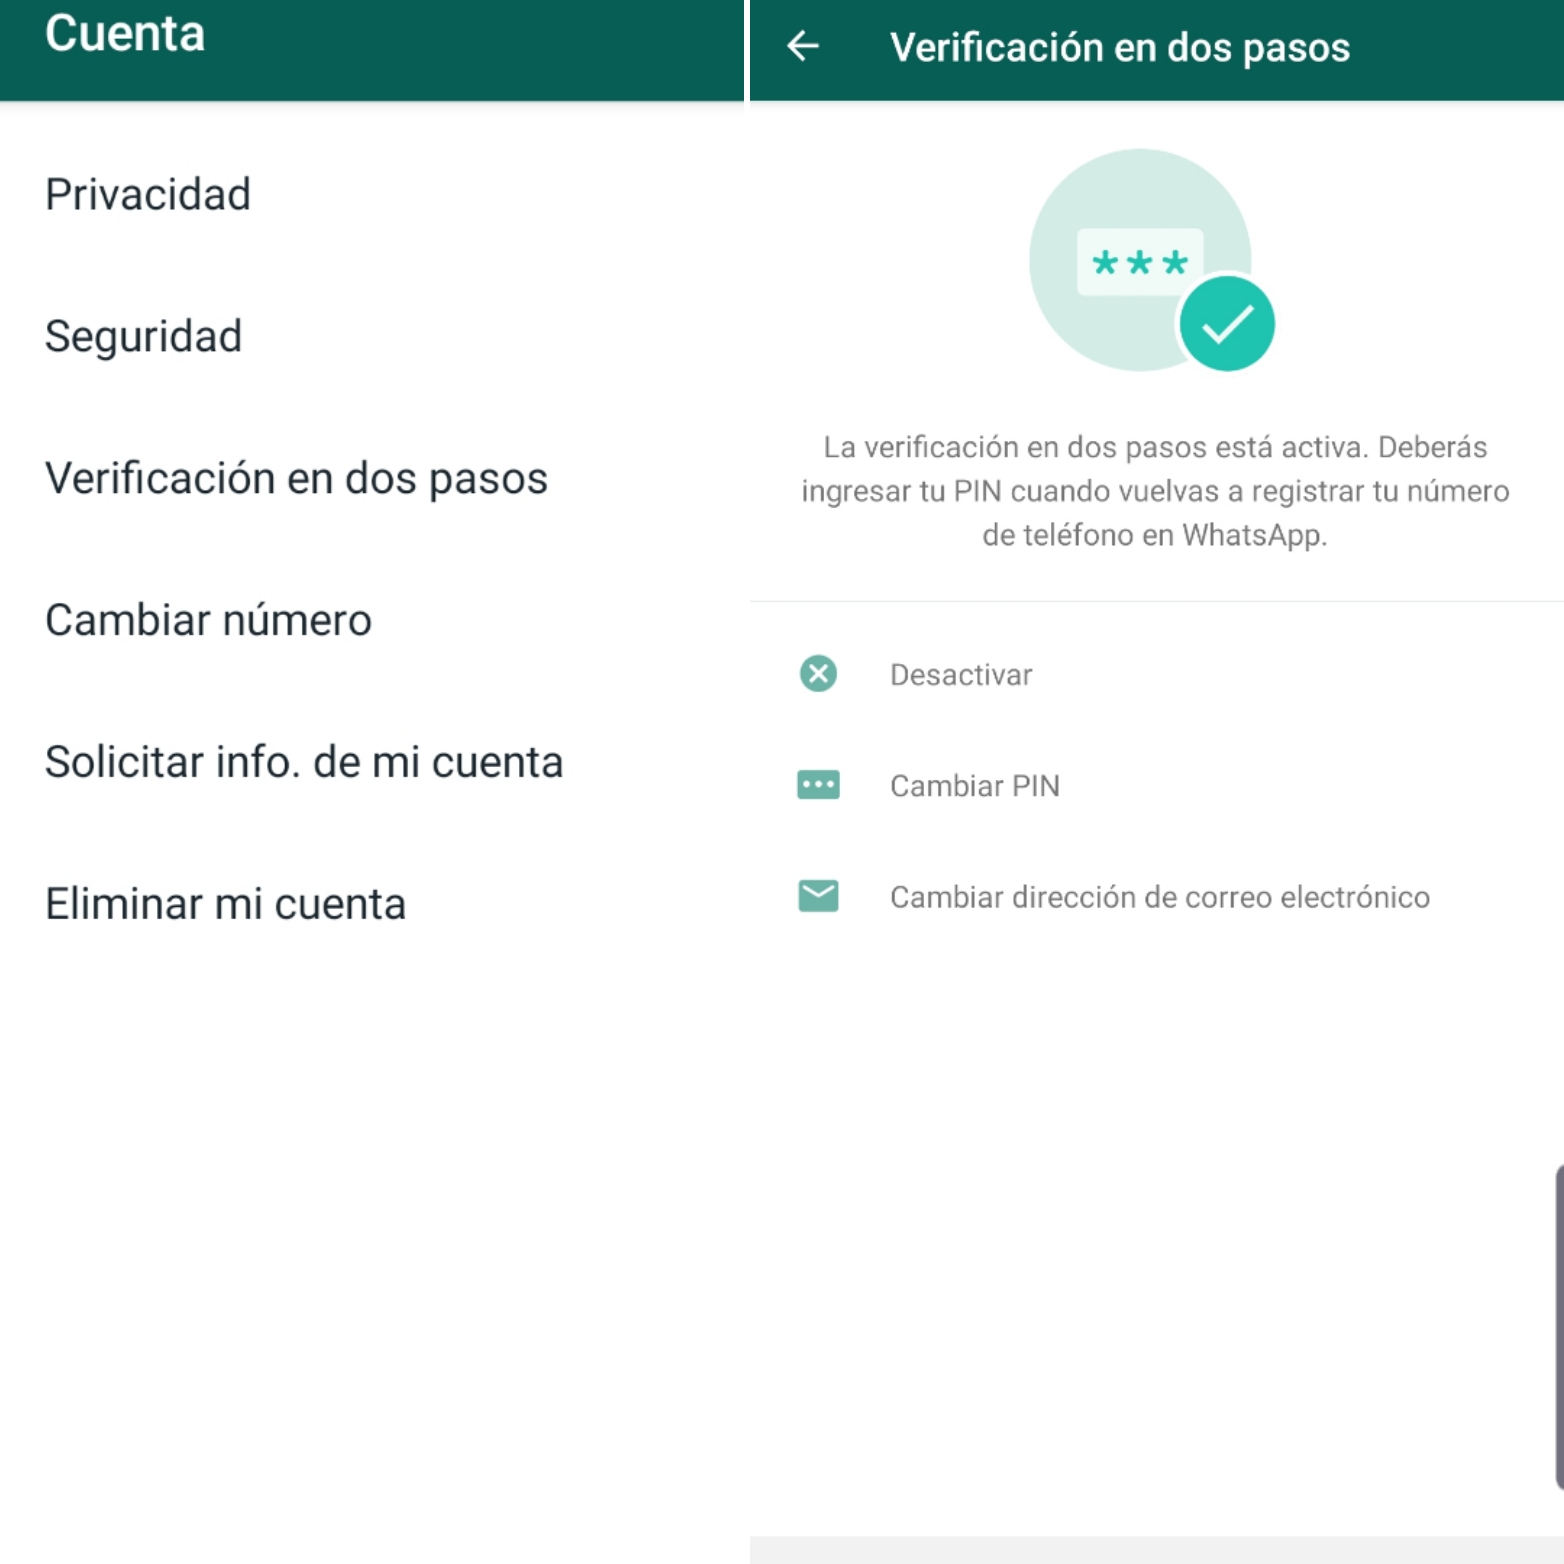 La verificación en dos pasos te permite crear un PIN de seis dígitos para añadir una capa de seguridad a tu WhatsApp